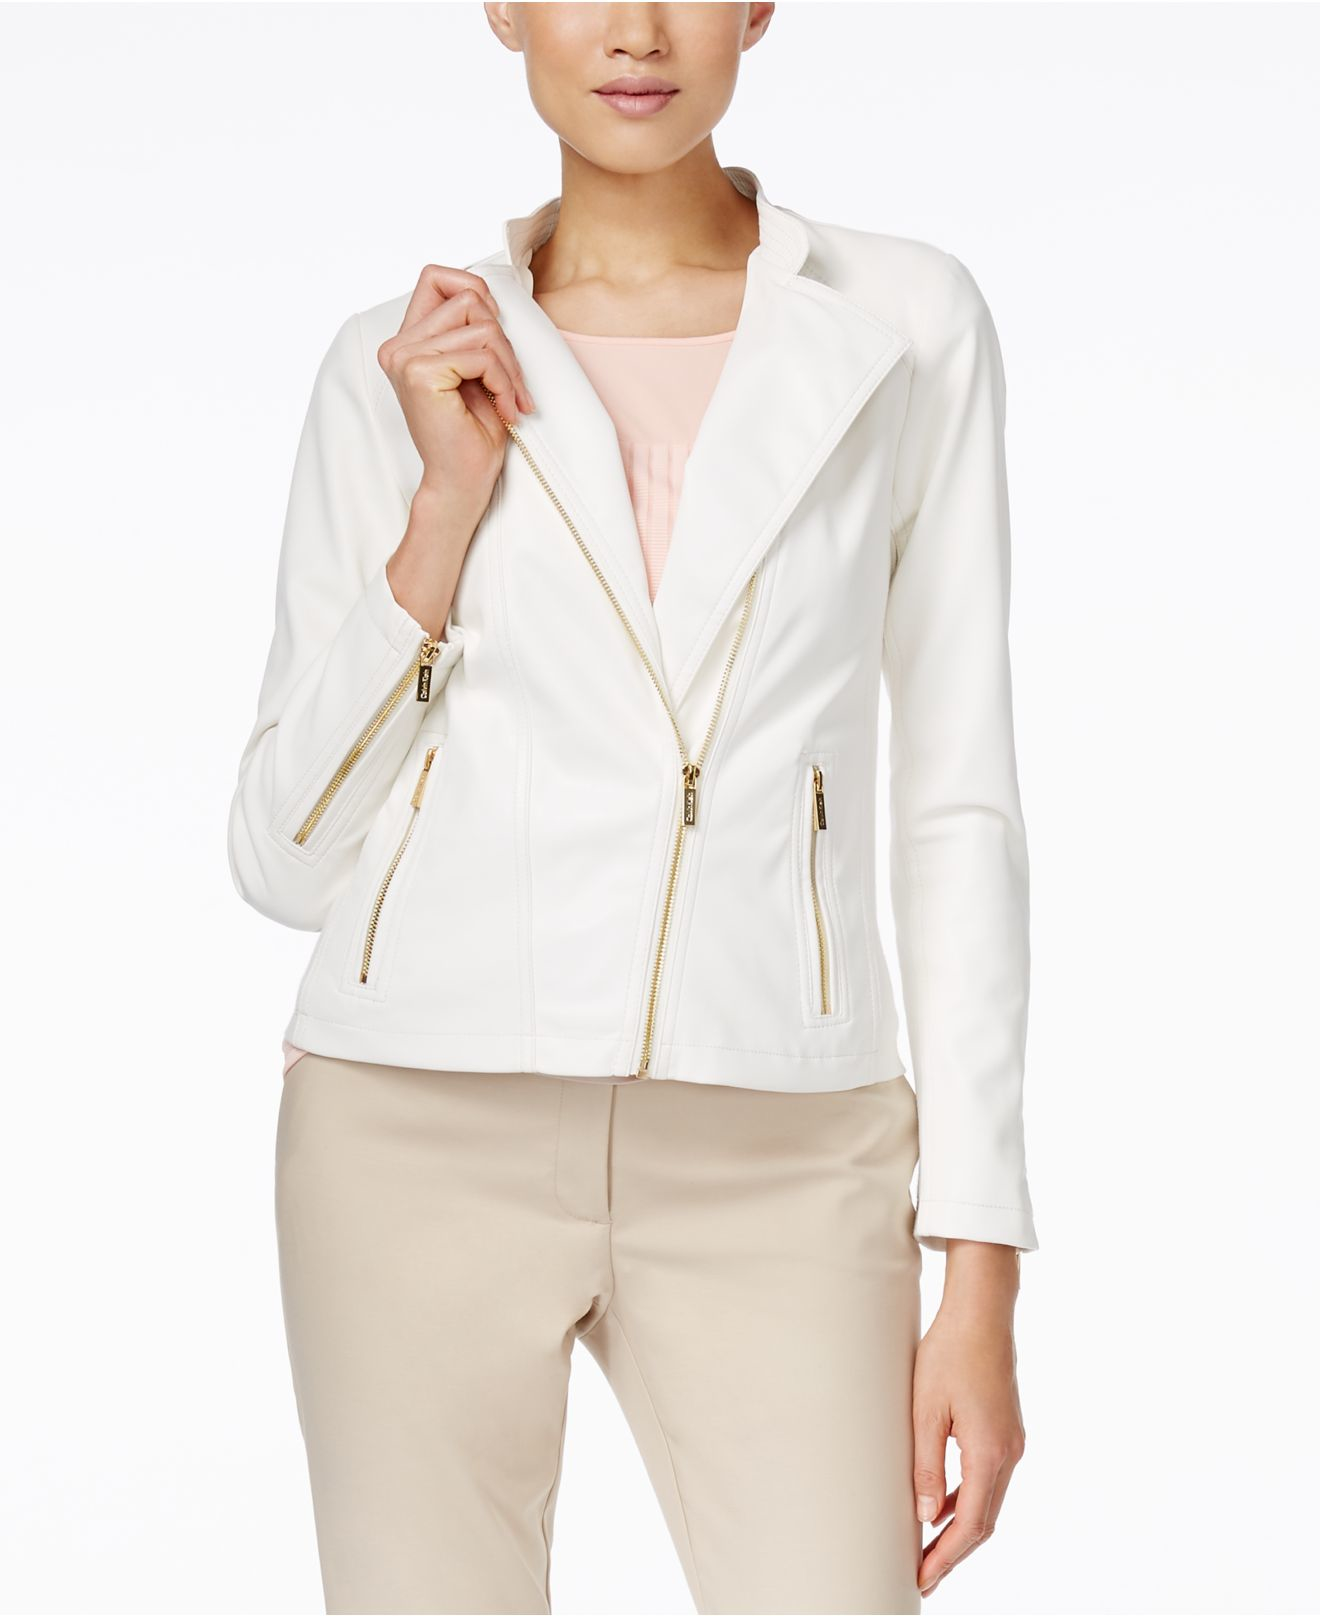 kanaal efficiënt Ambitieus Calvin Klein White Leather Jacket Flash Sales, SAVE 55%.